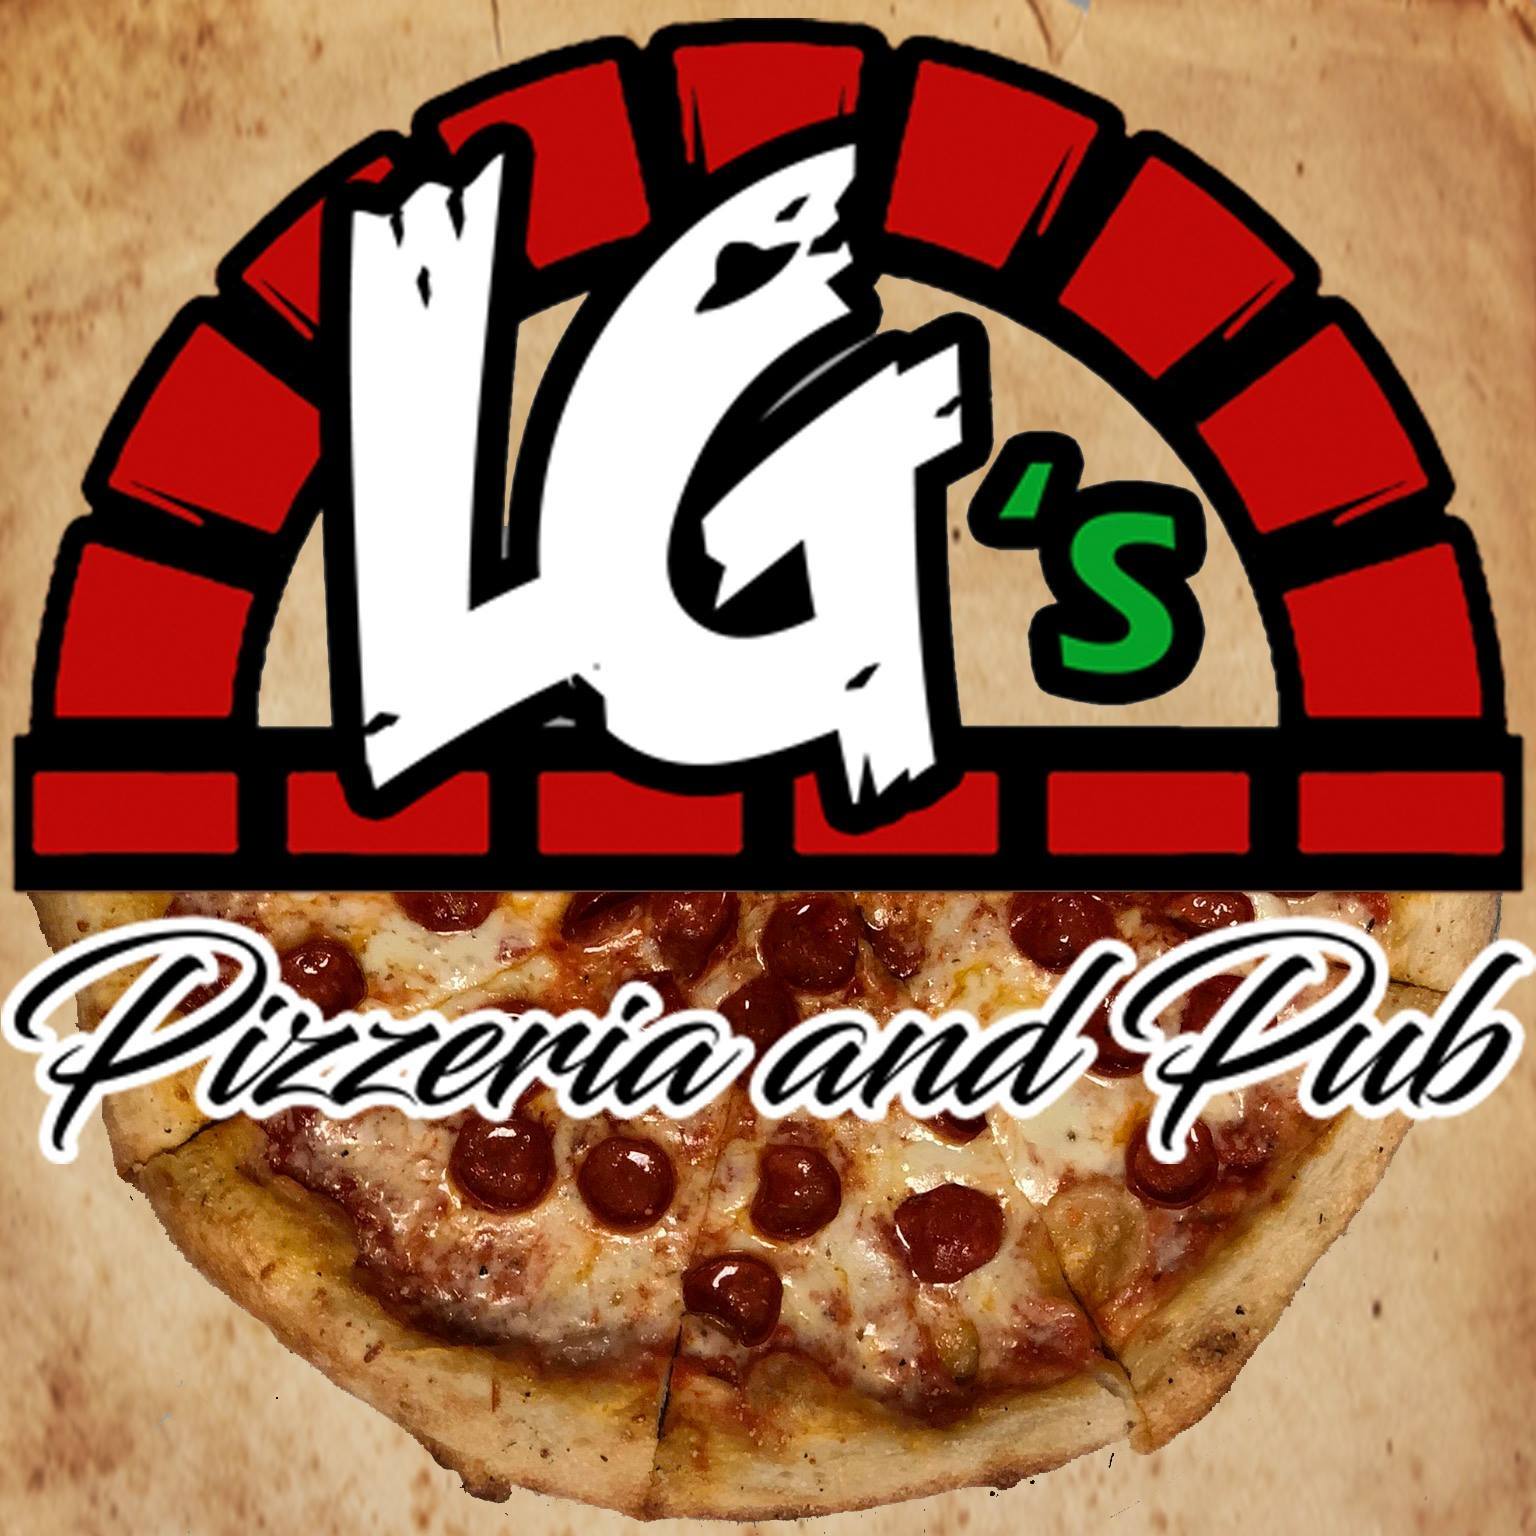 LG’s Pizzeria and Pub